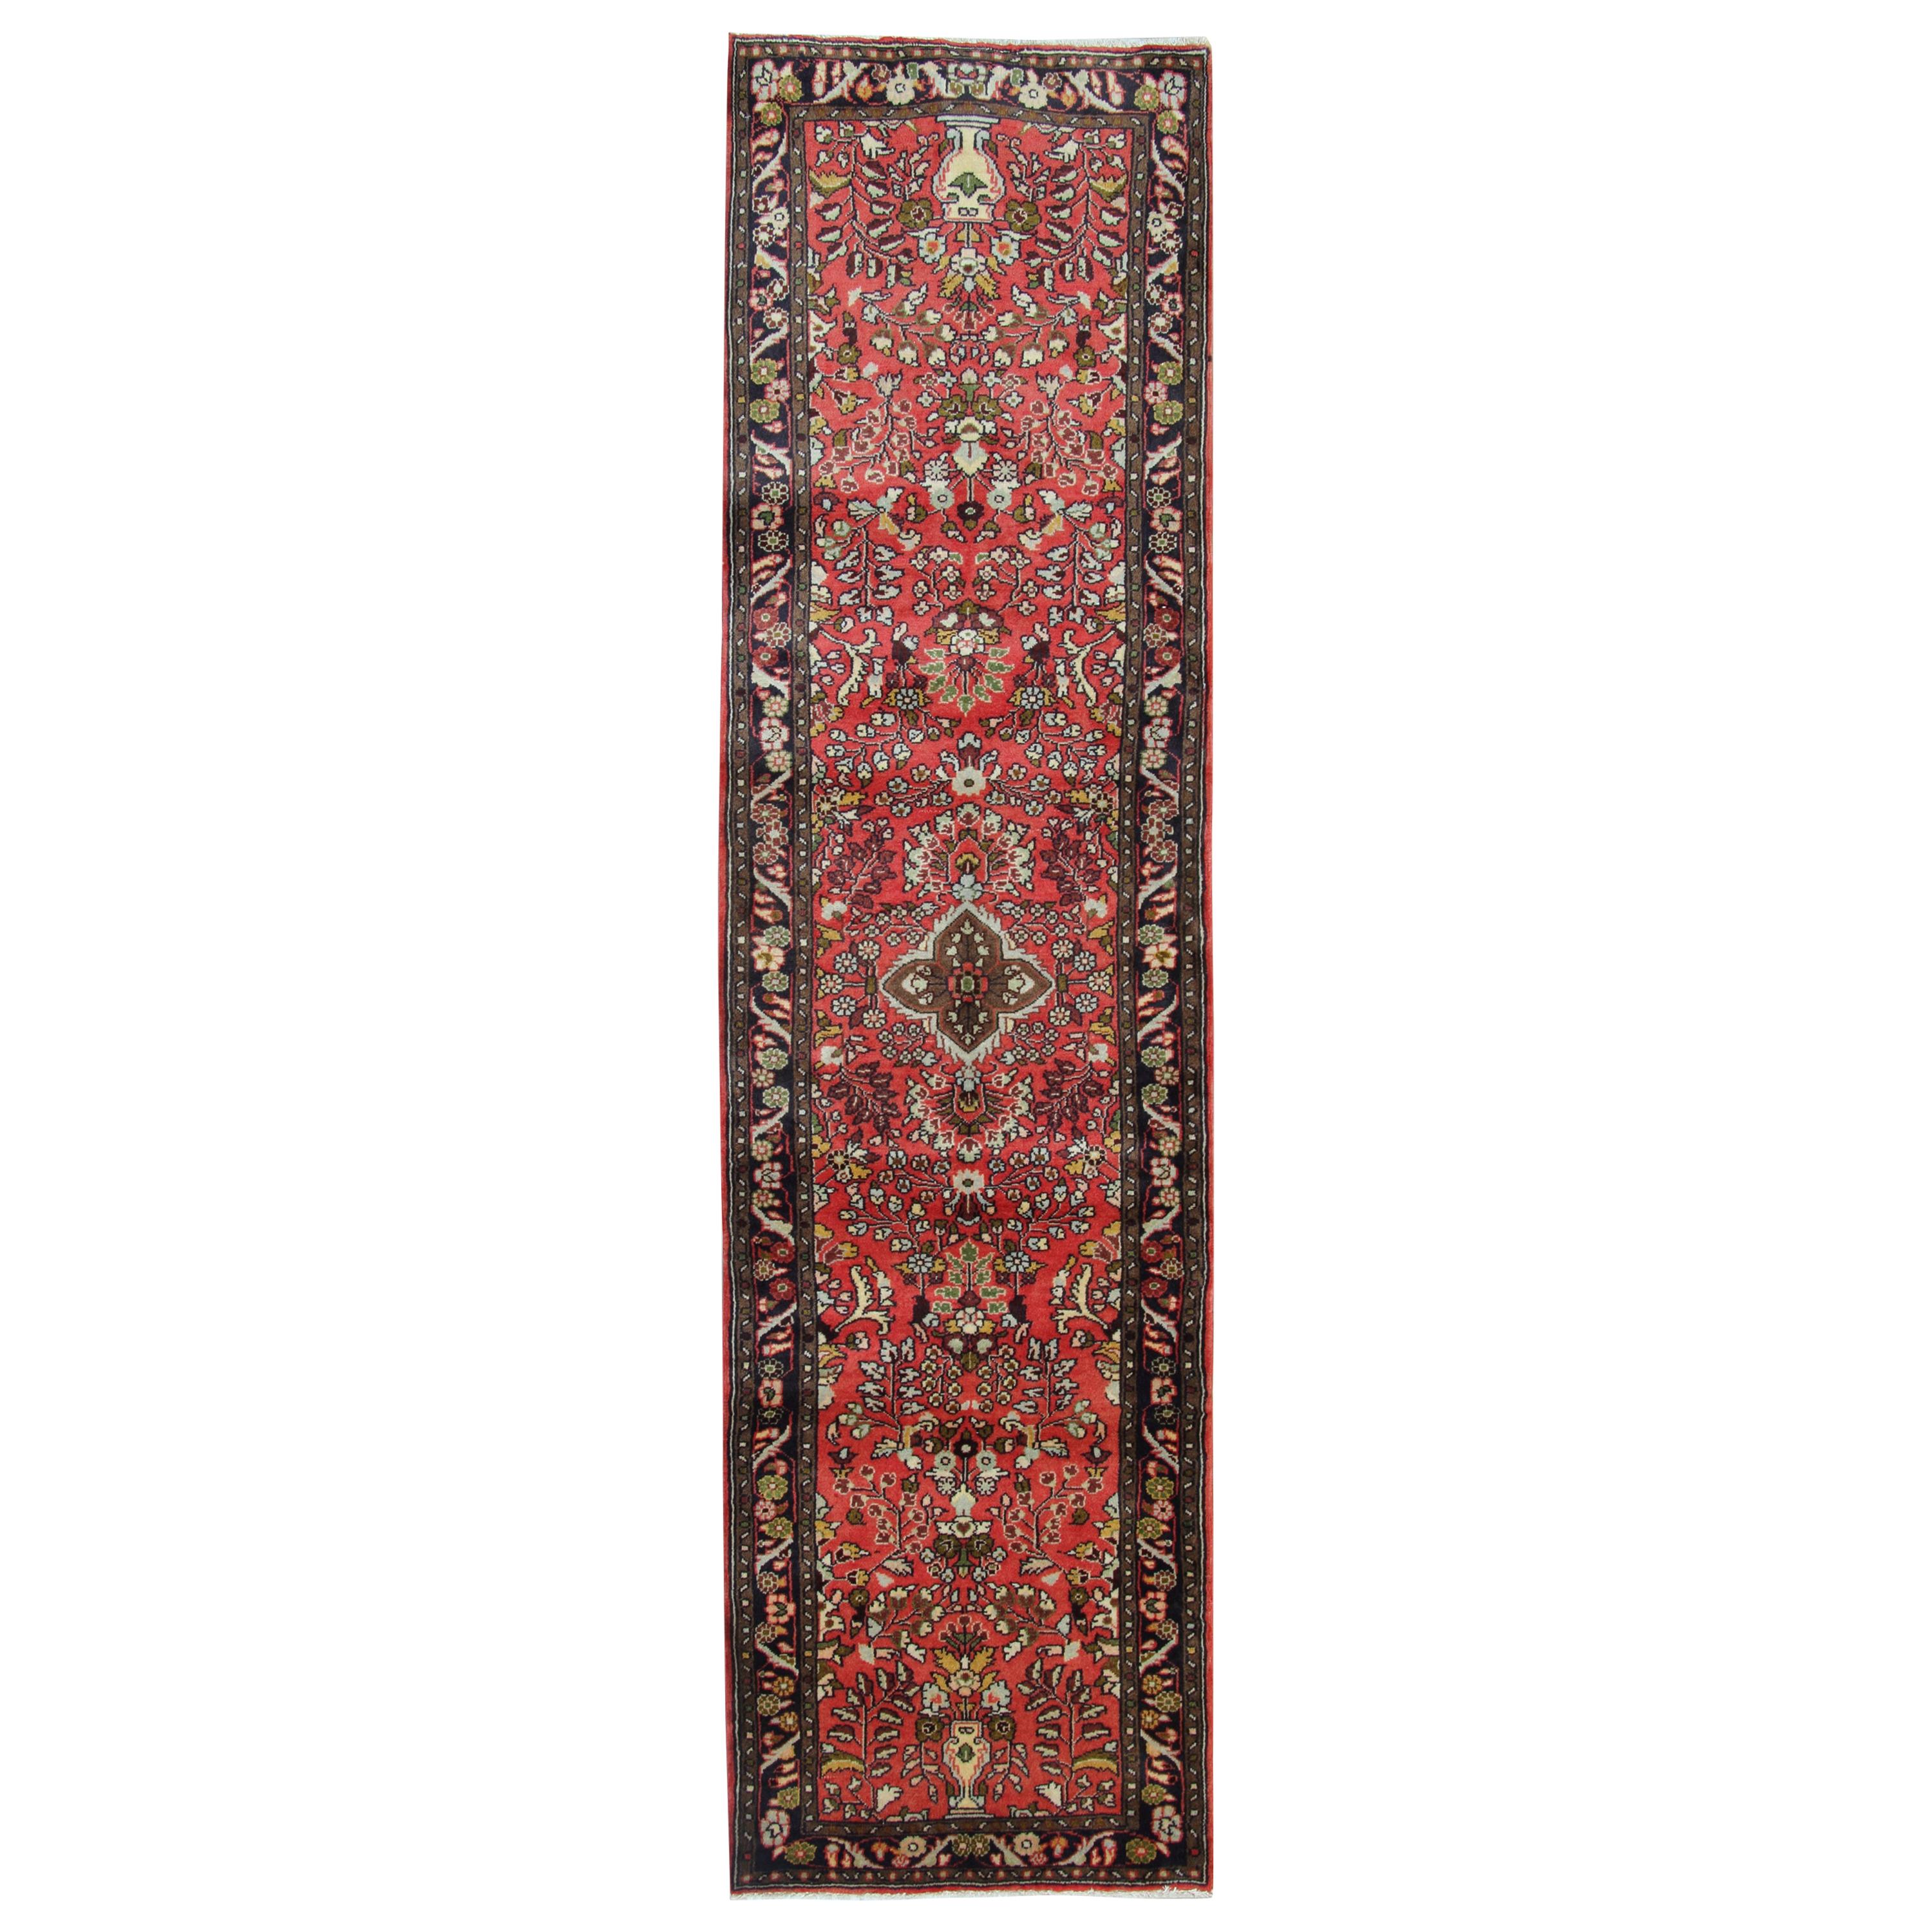 Handgewebter Orientteppich aus Wolle, traditioneller rot-blauer Teppich - 77x265 cm